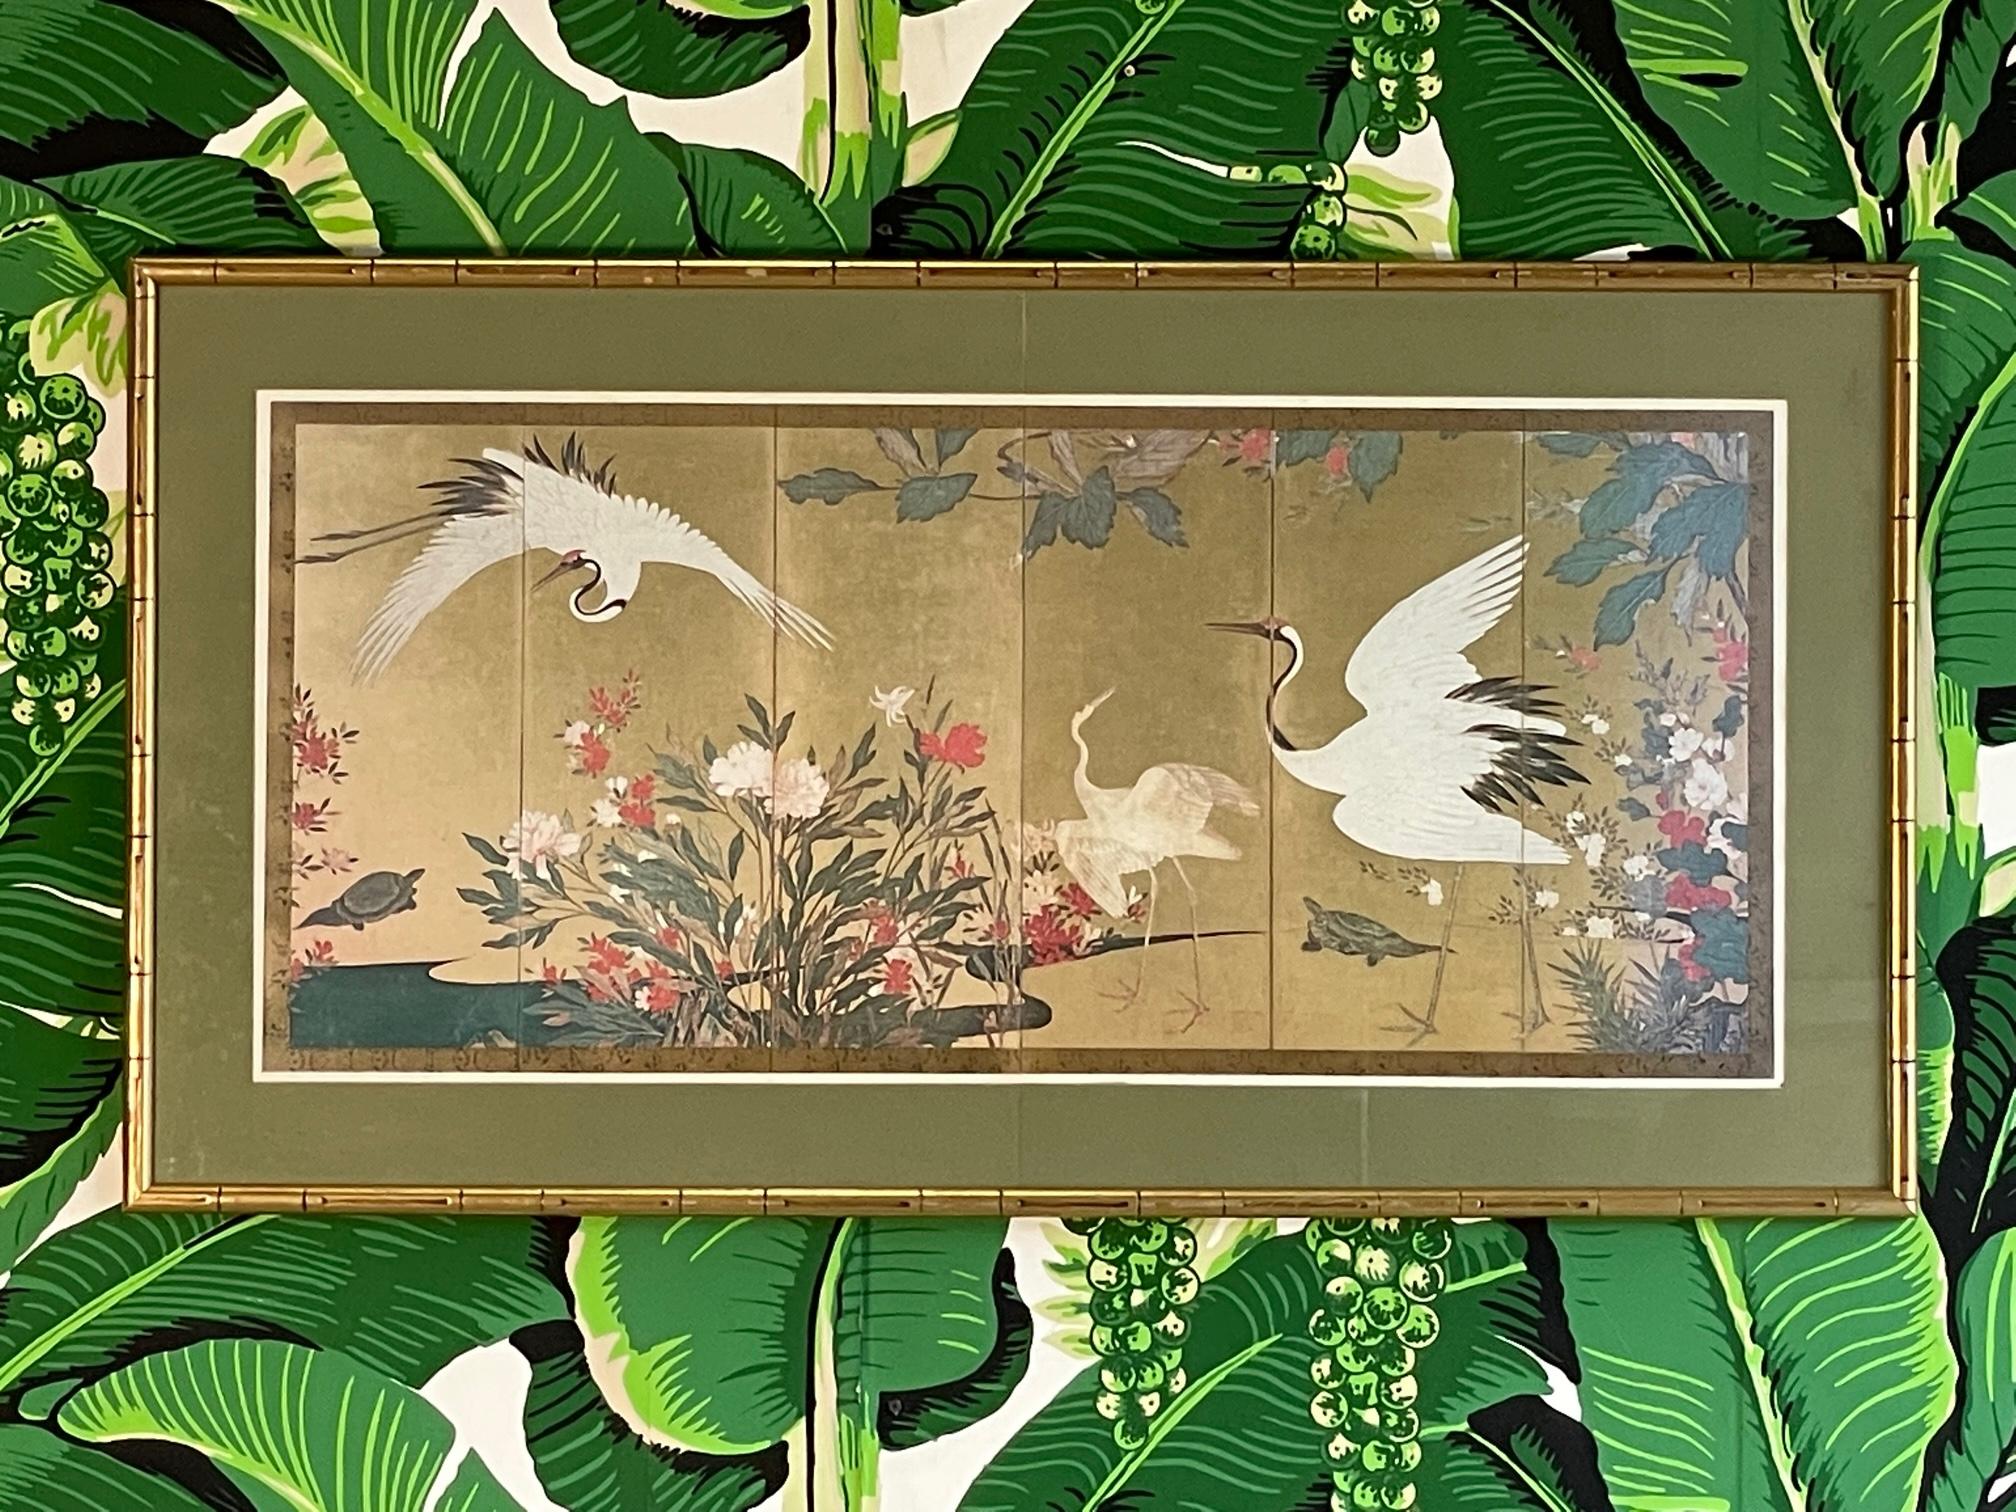 Estampe encadrée d'art japonais représentant des grues et de la flore, estimée vers la fin du XVIe ou le début du XVIIe siècle. Encadré en bois sculpté en faux bambou et doré. Bon état avec des imperfections correspondant à l'âge, voir les photos